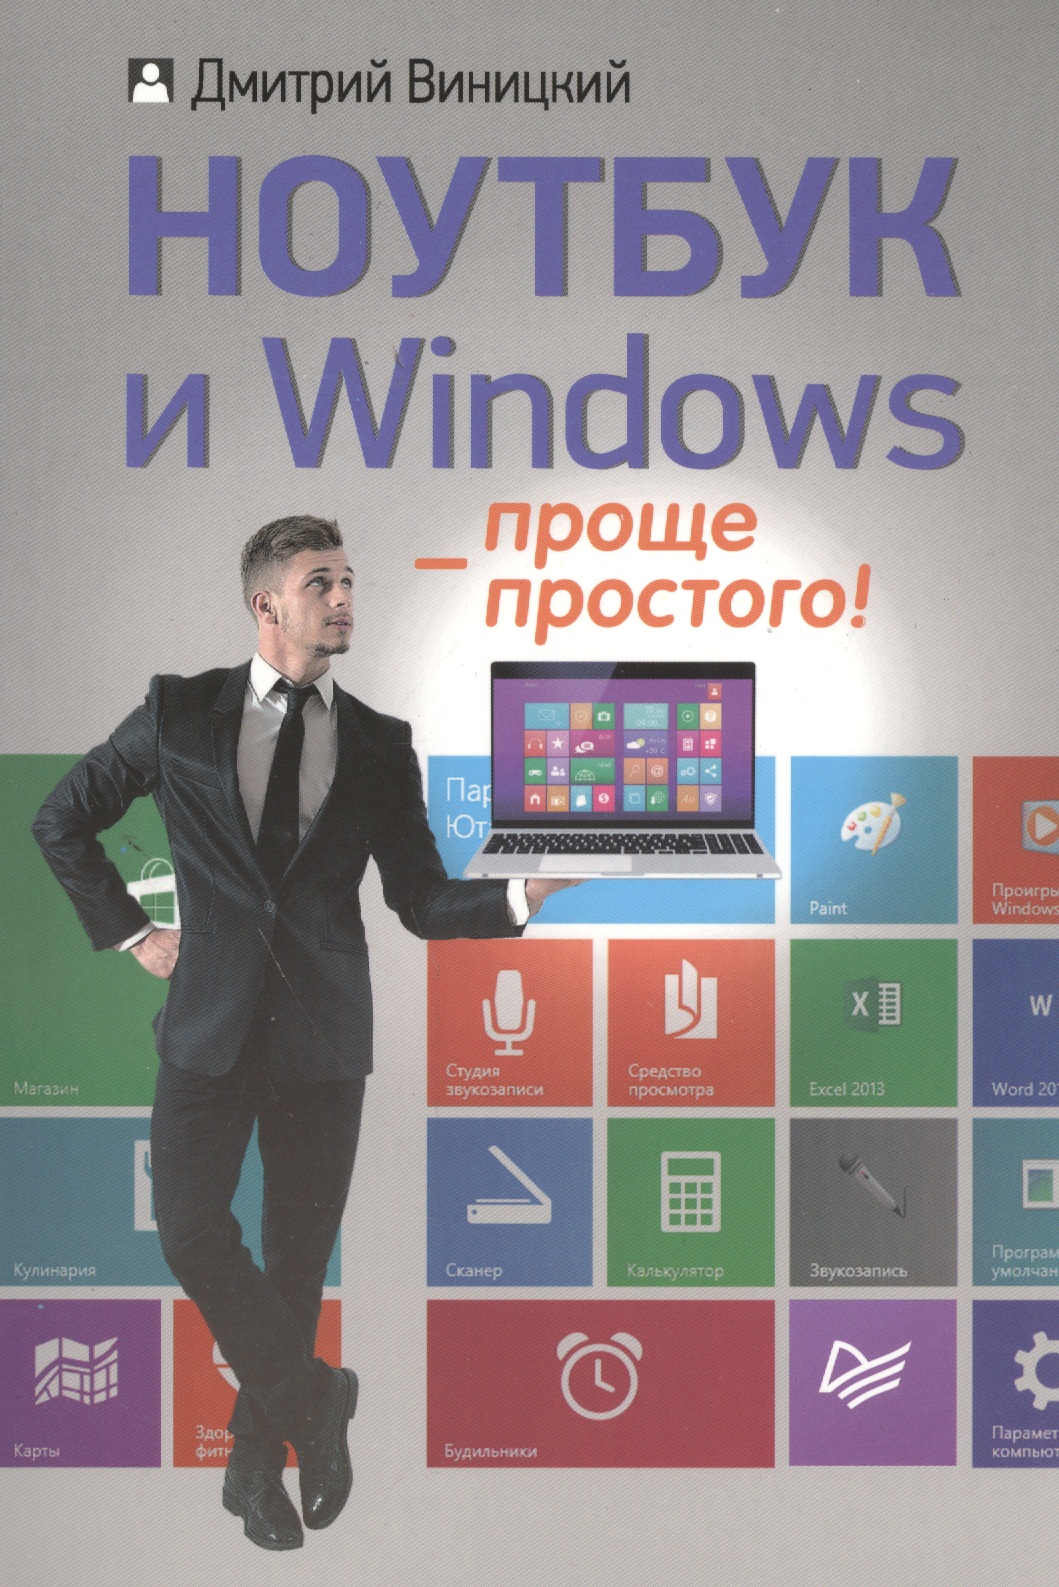 Виницкий Дмитрий Мирославович Ноутбук и Windows - проще простого! алиев валерий windows 7 – проще простого